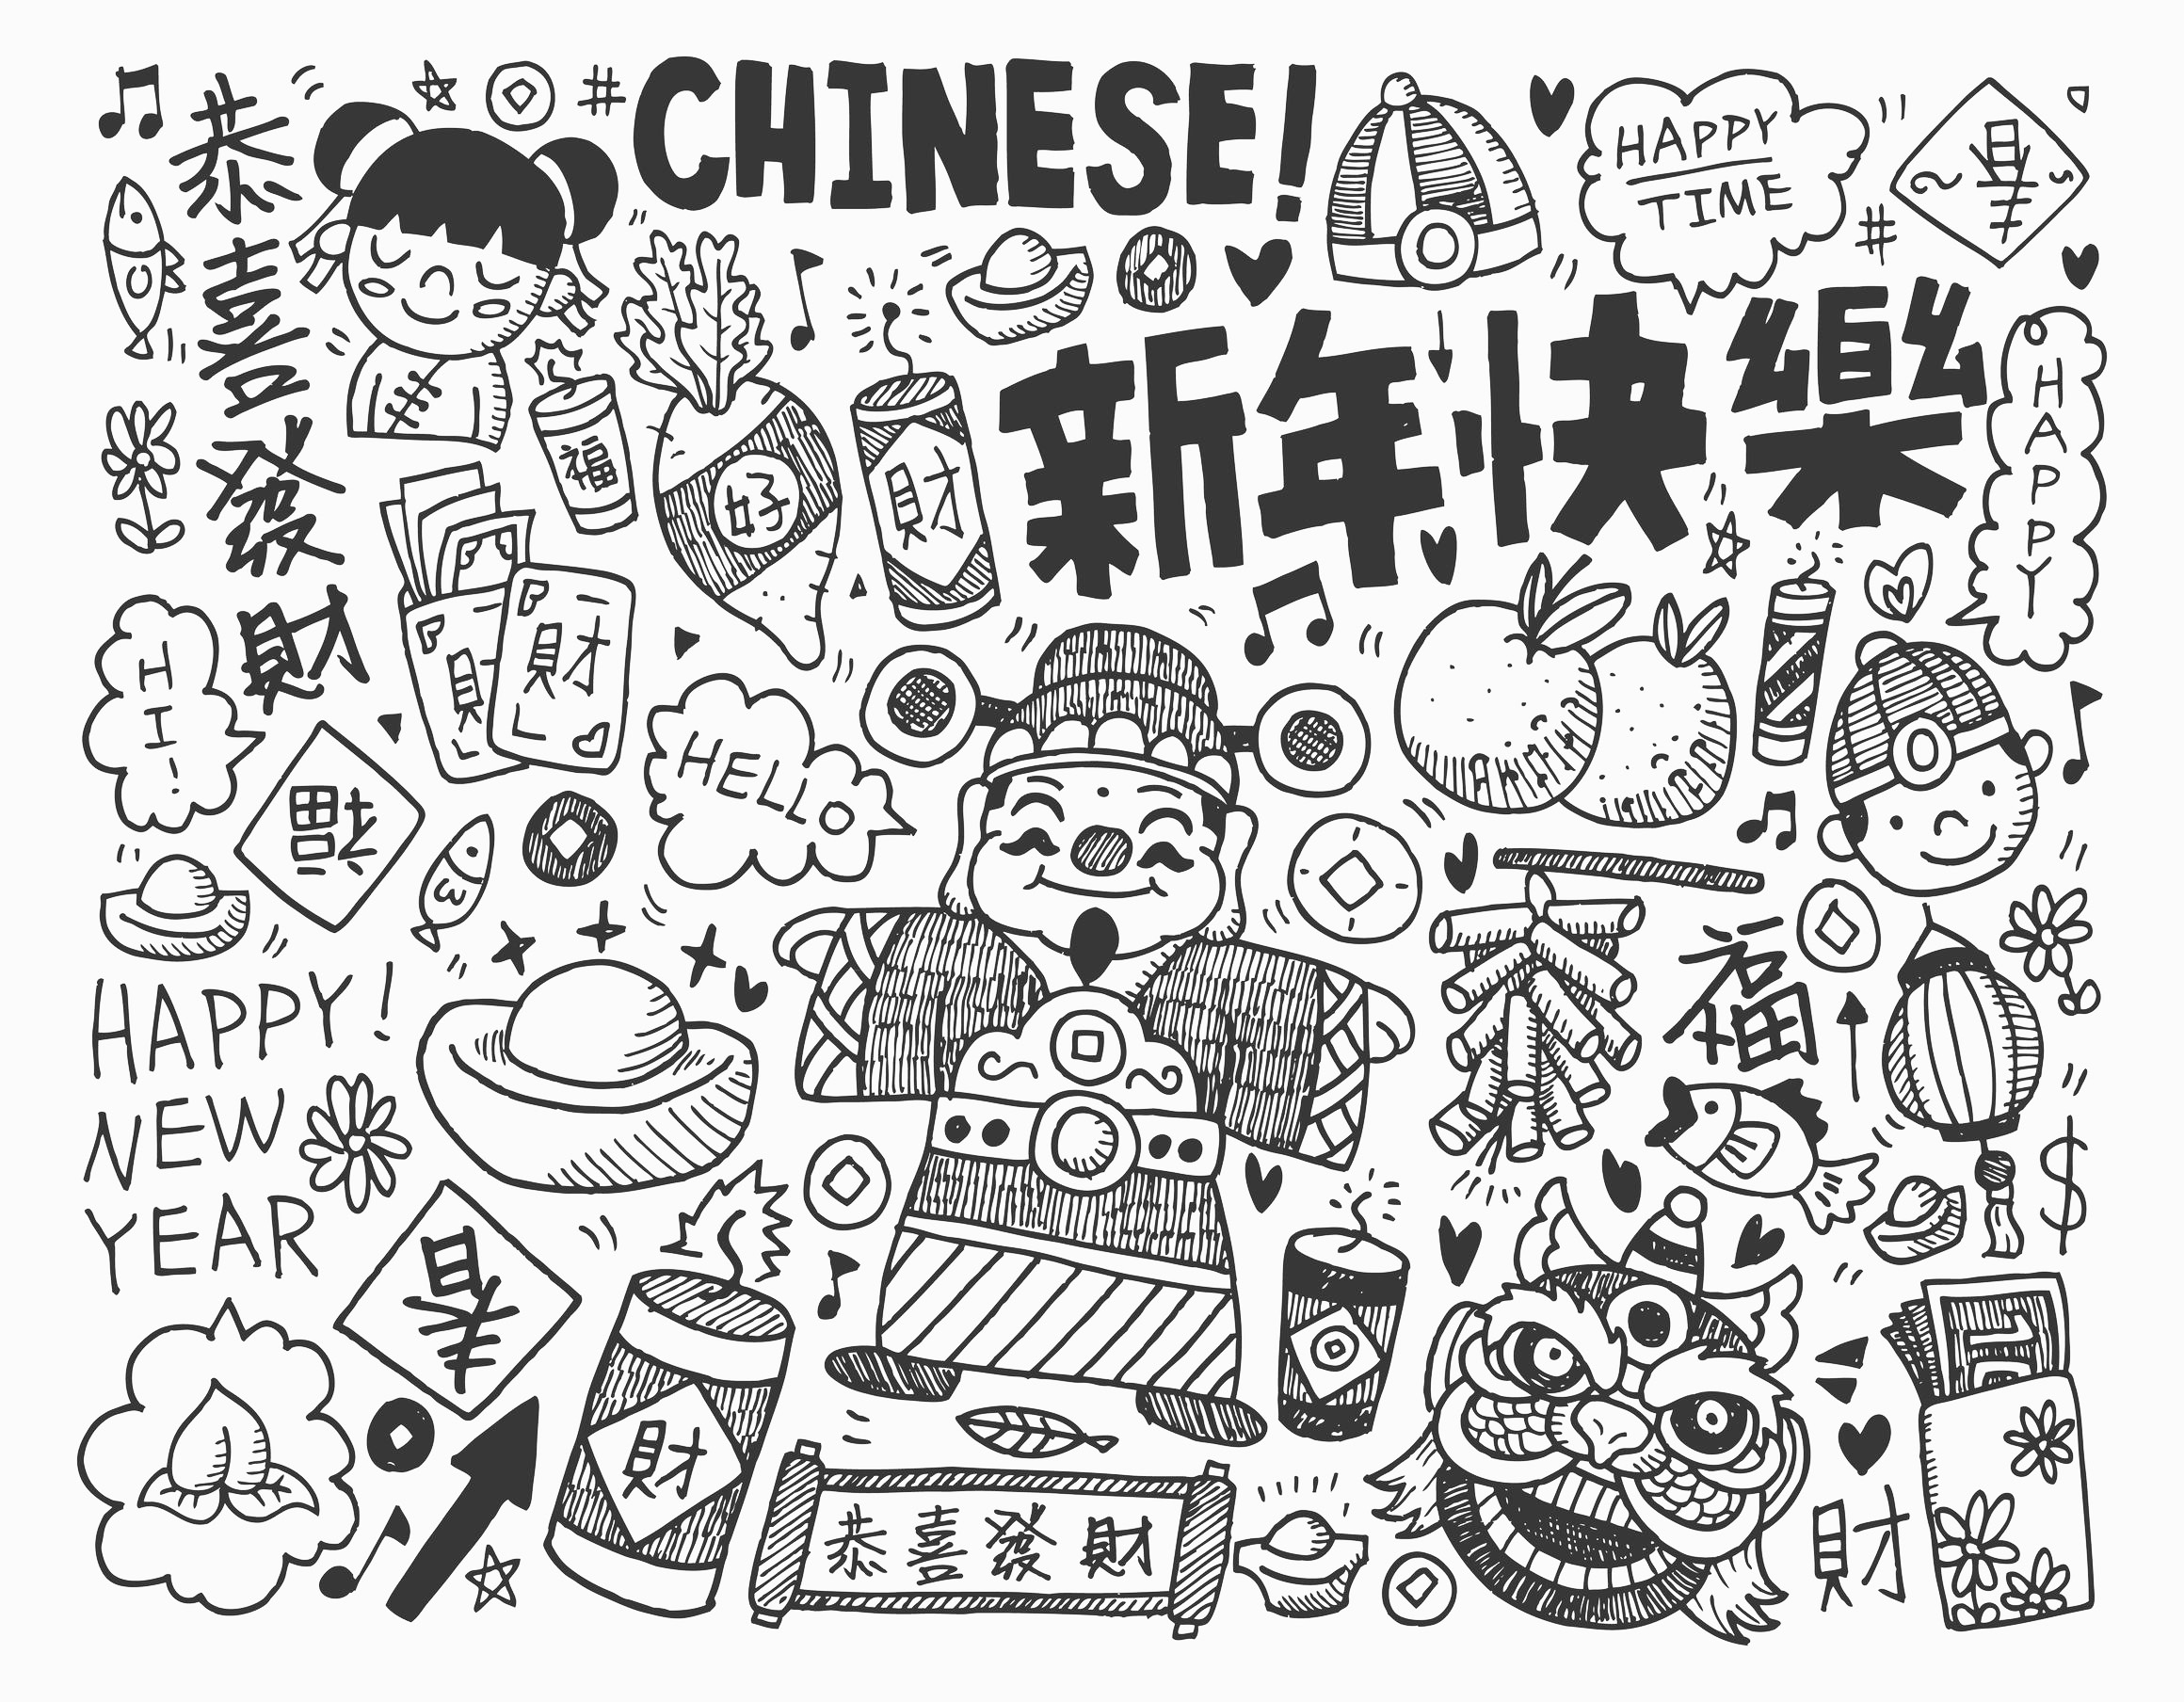 Un coloriage au style 'gribouillage' pour célébrer le nouvel an chinois, Artiste : Notkoo2008   Source : 123rf